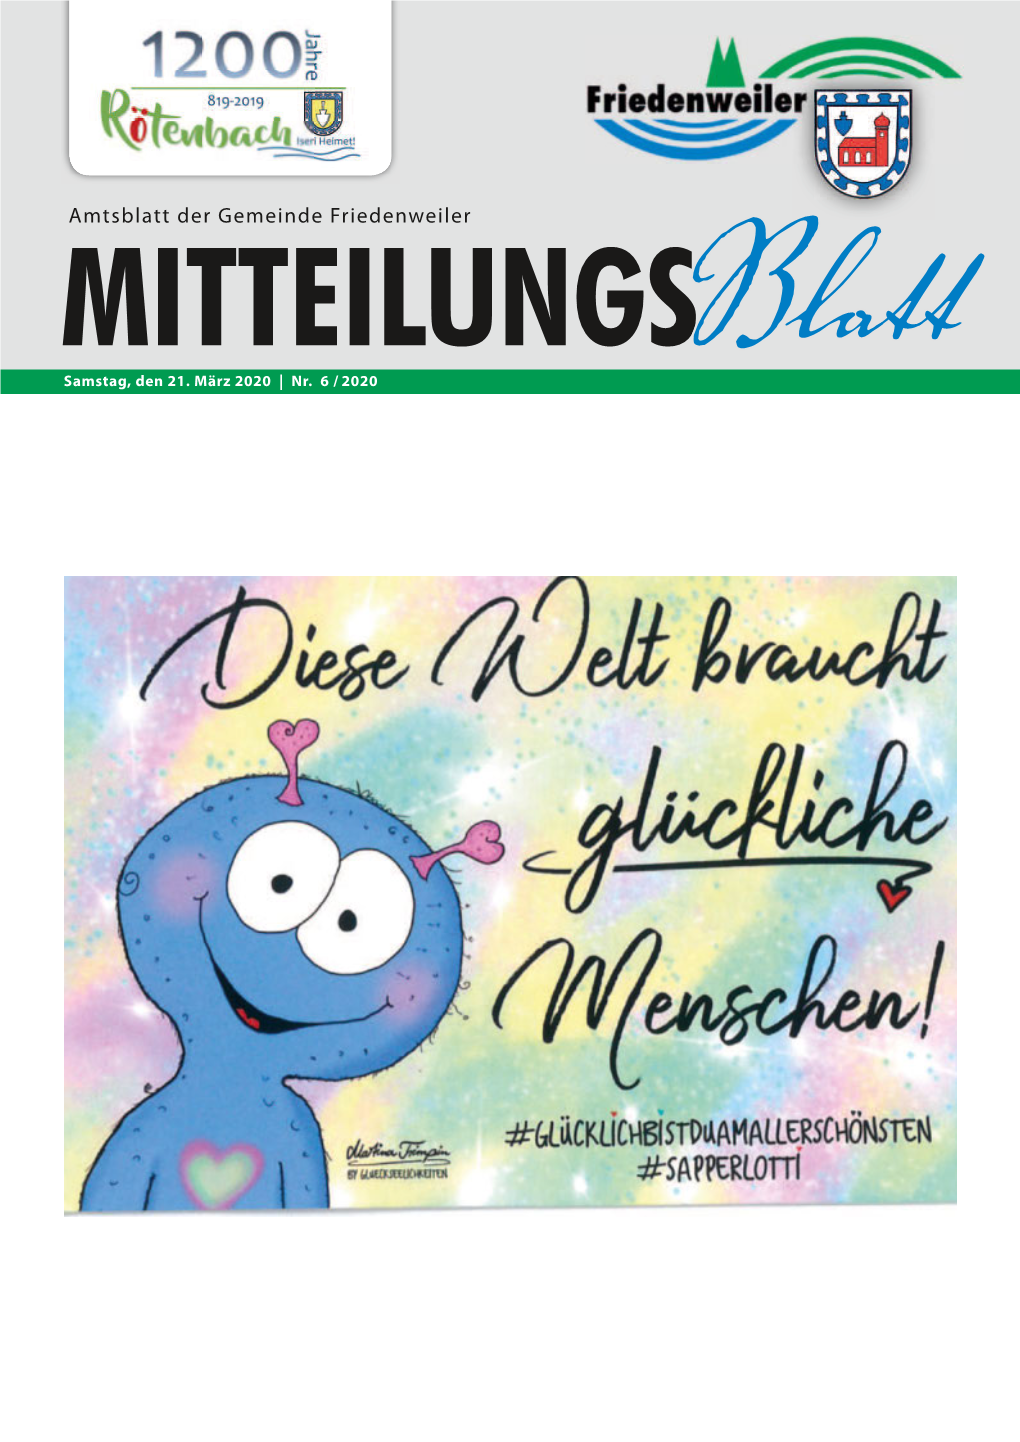 Mitteilungsblatt Vom 21.03.2020